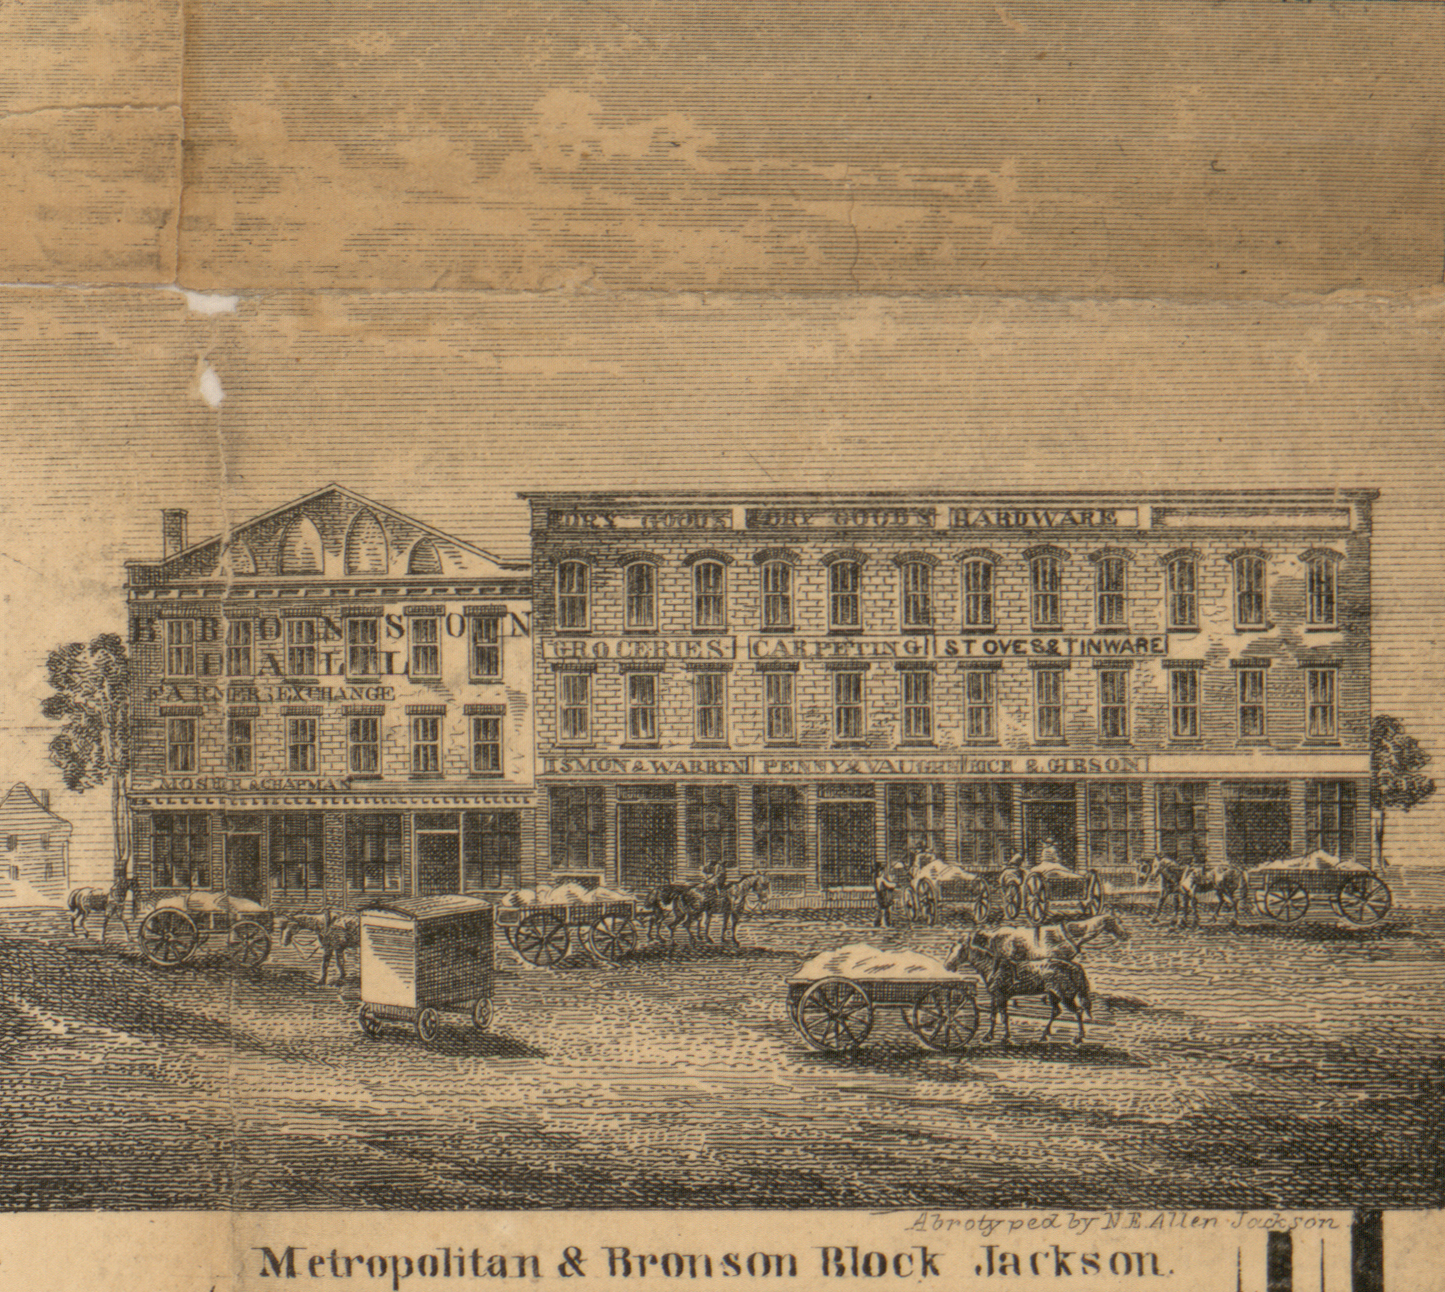 Metropolitan & Bronson Block, Jackson, Jackson 1858